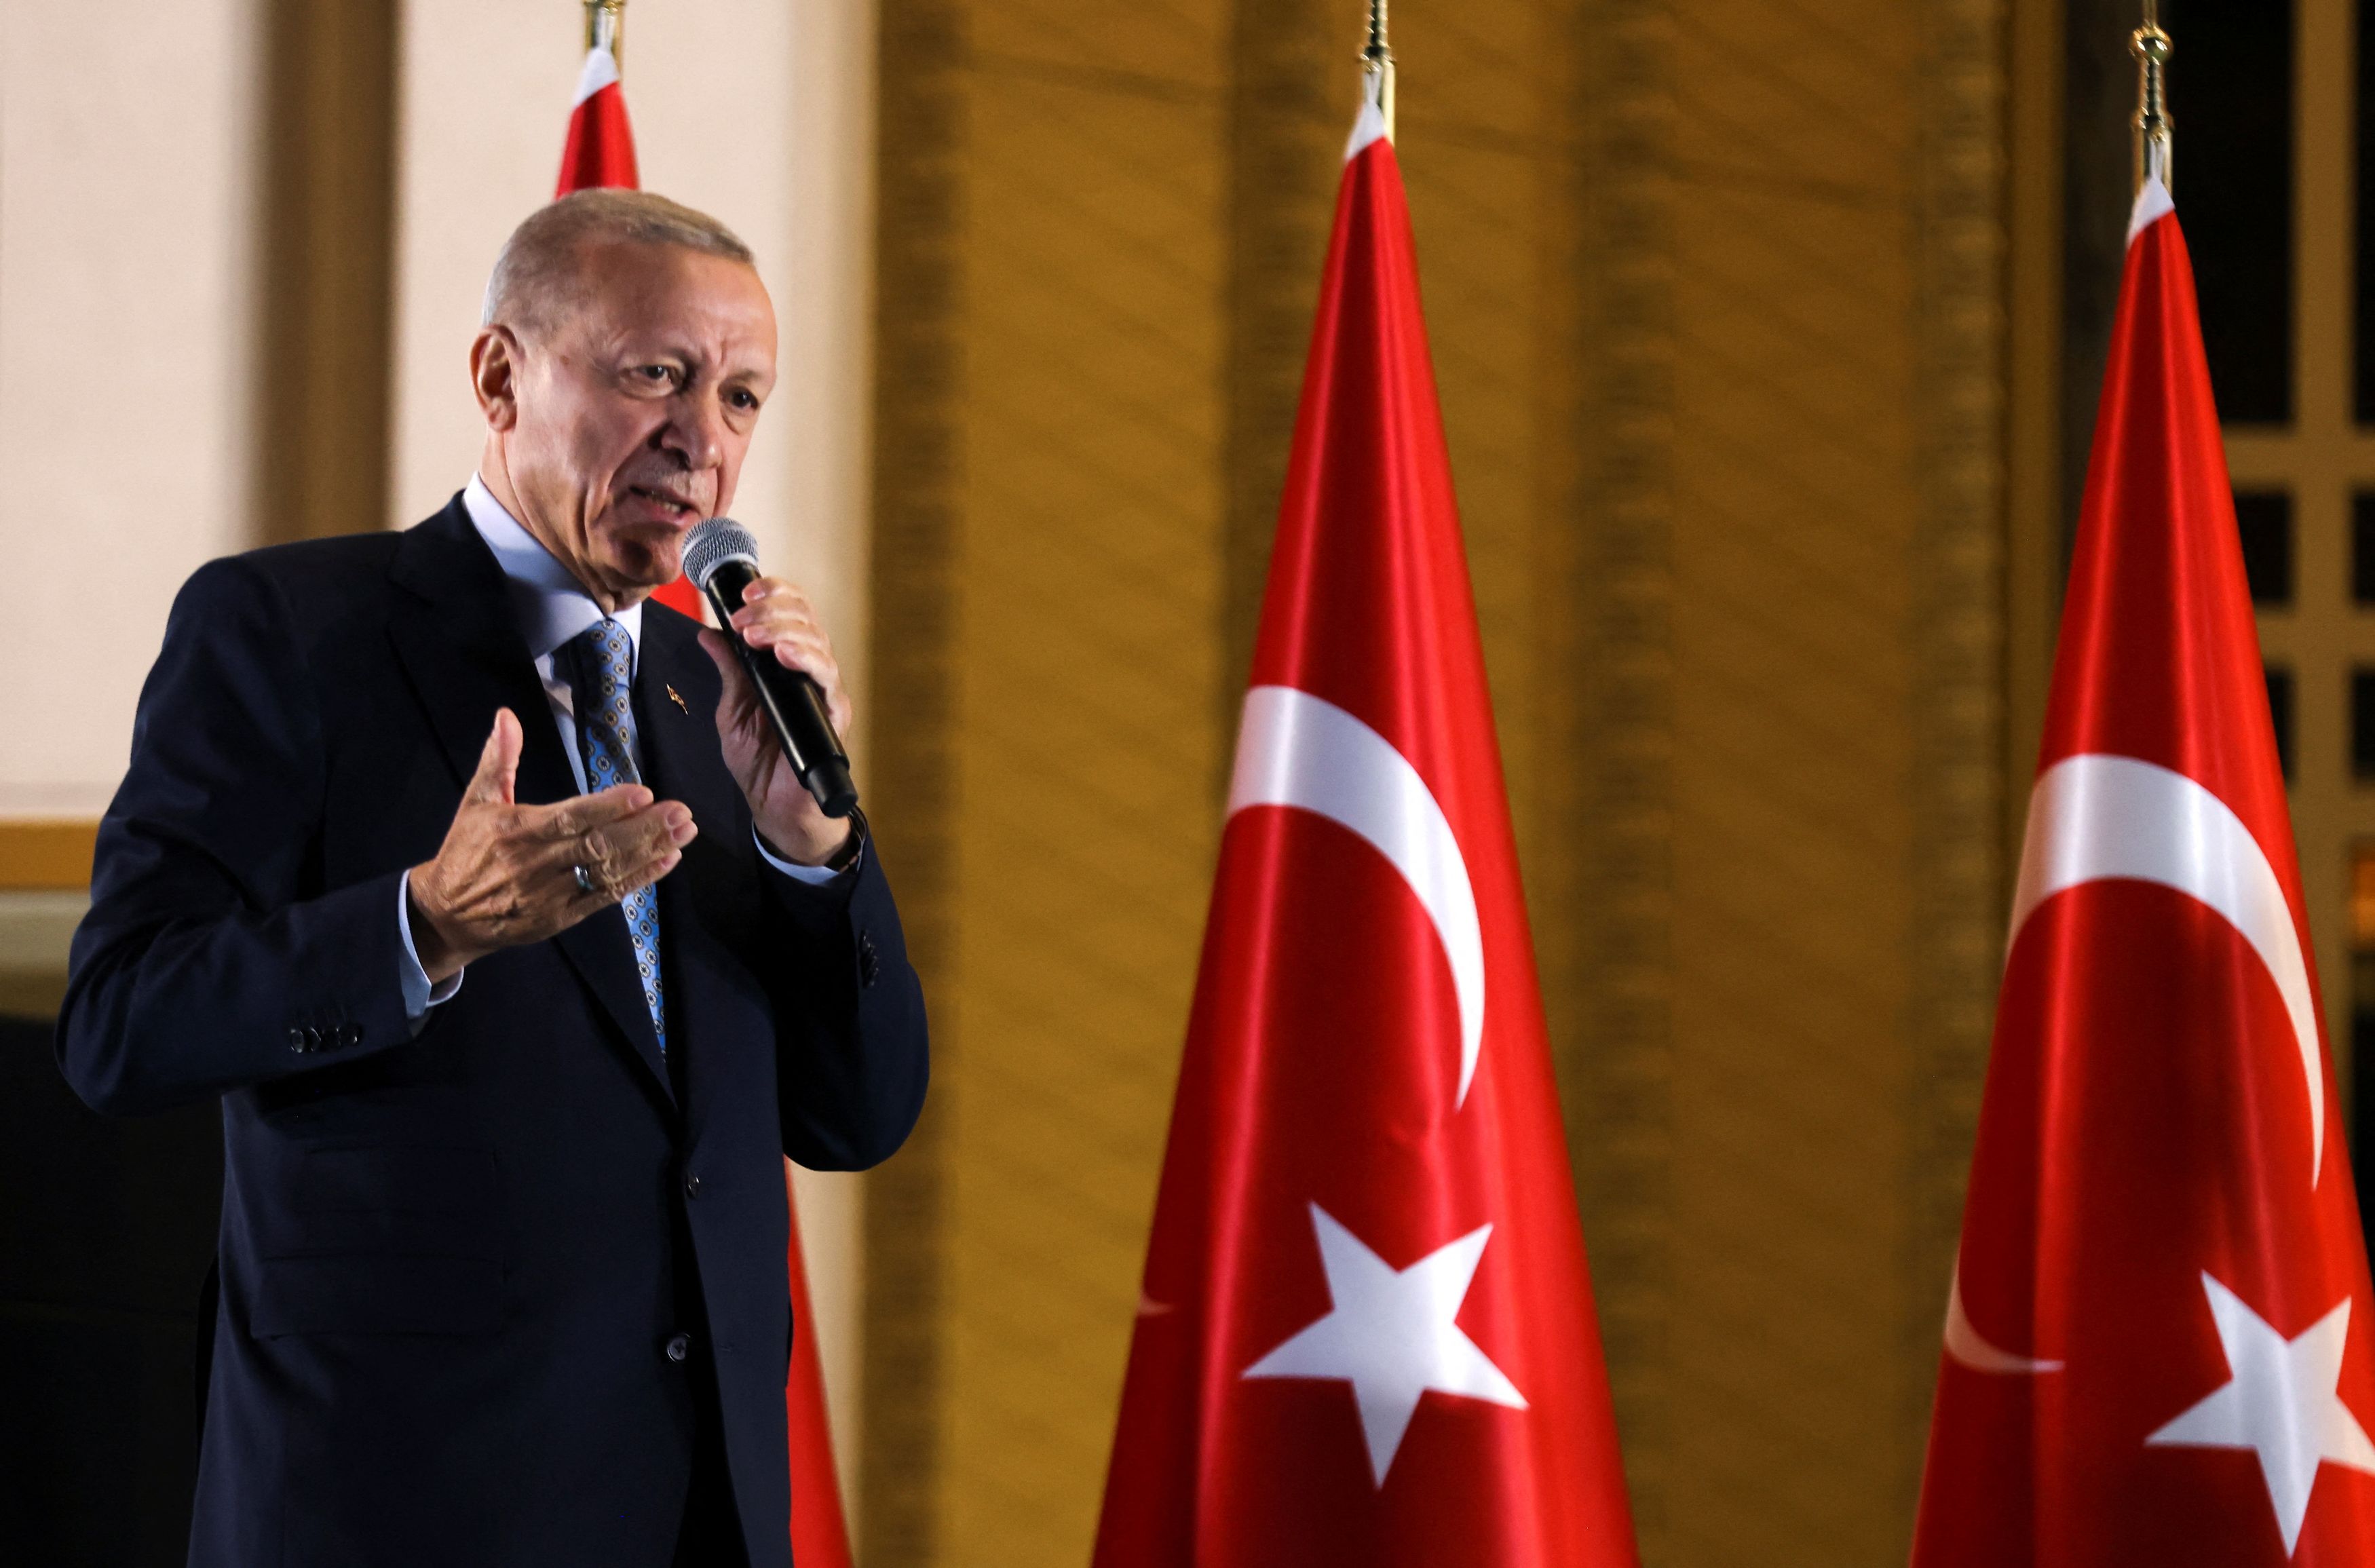 Εκλογές Τουρκία: «Κόλαφος» το Συμβούλιο της Ευρώπης για Ερντογάν - «Συνθήκες άνισου ανταγωνισμού του έδωσαν πλεονέκτημα»